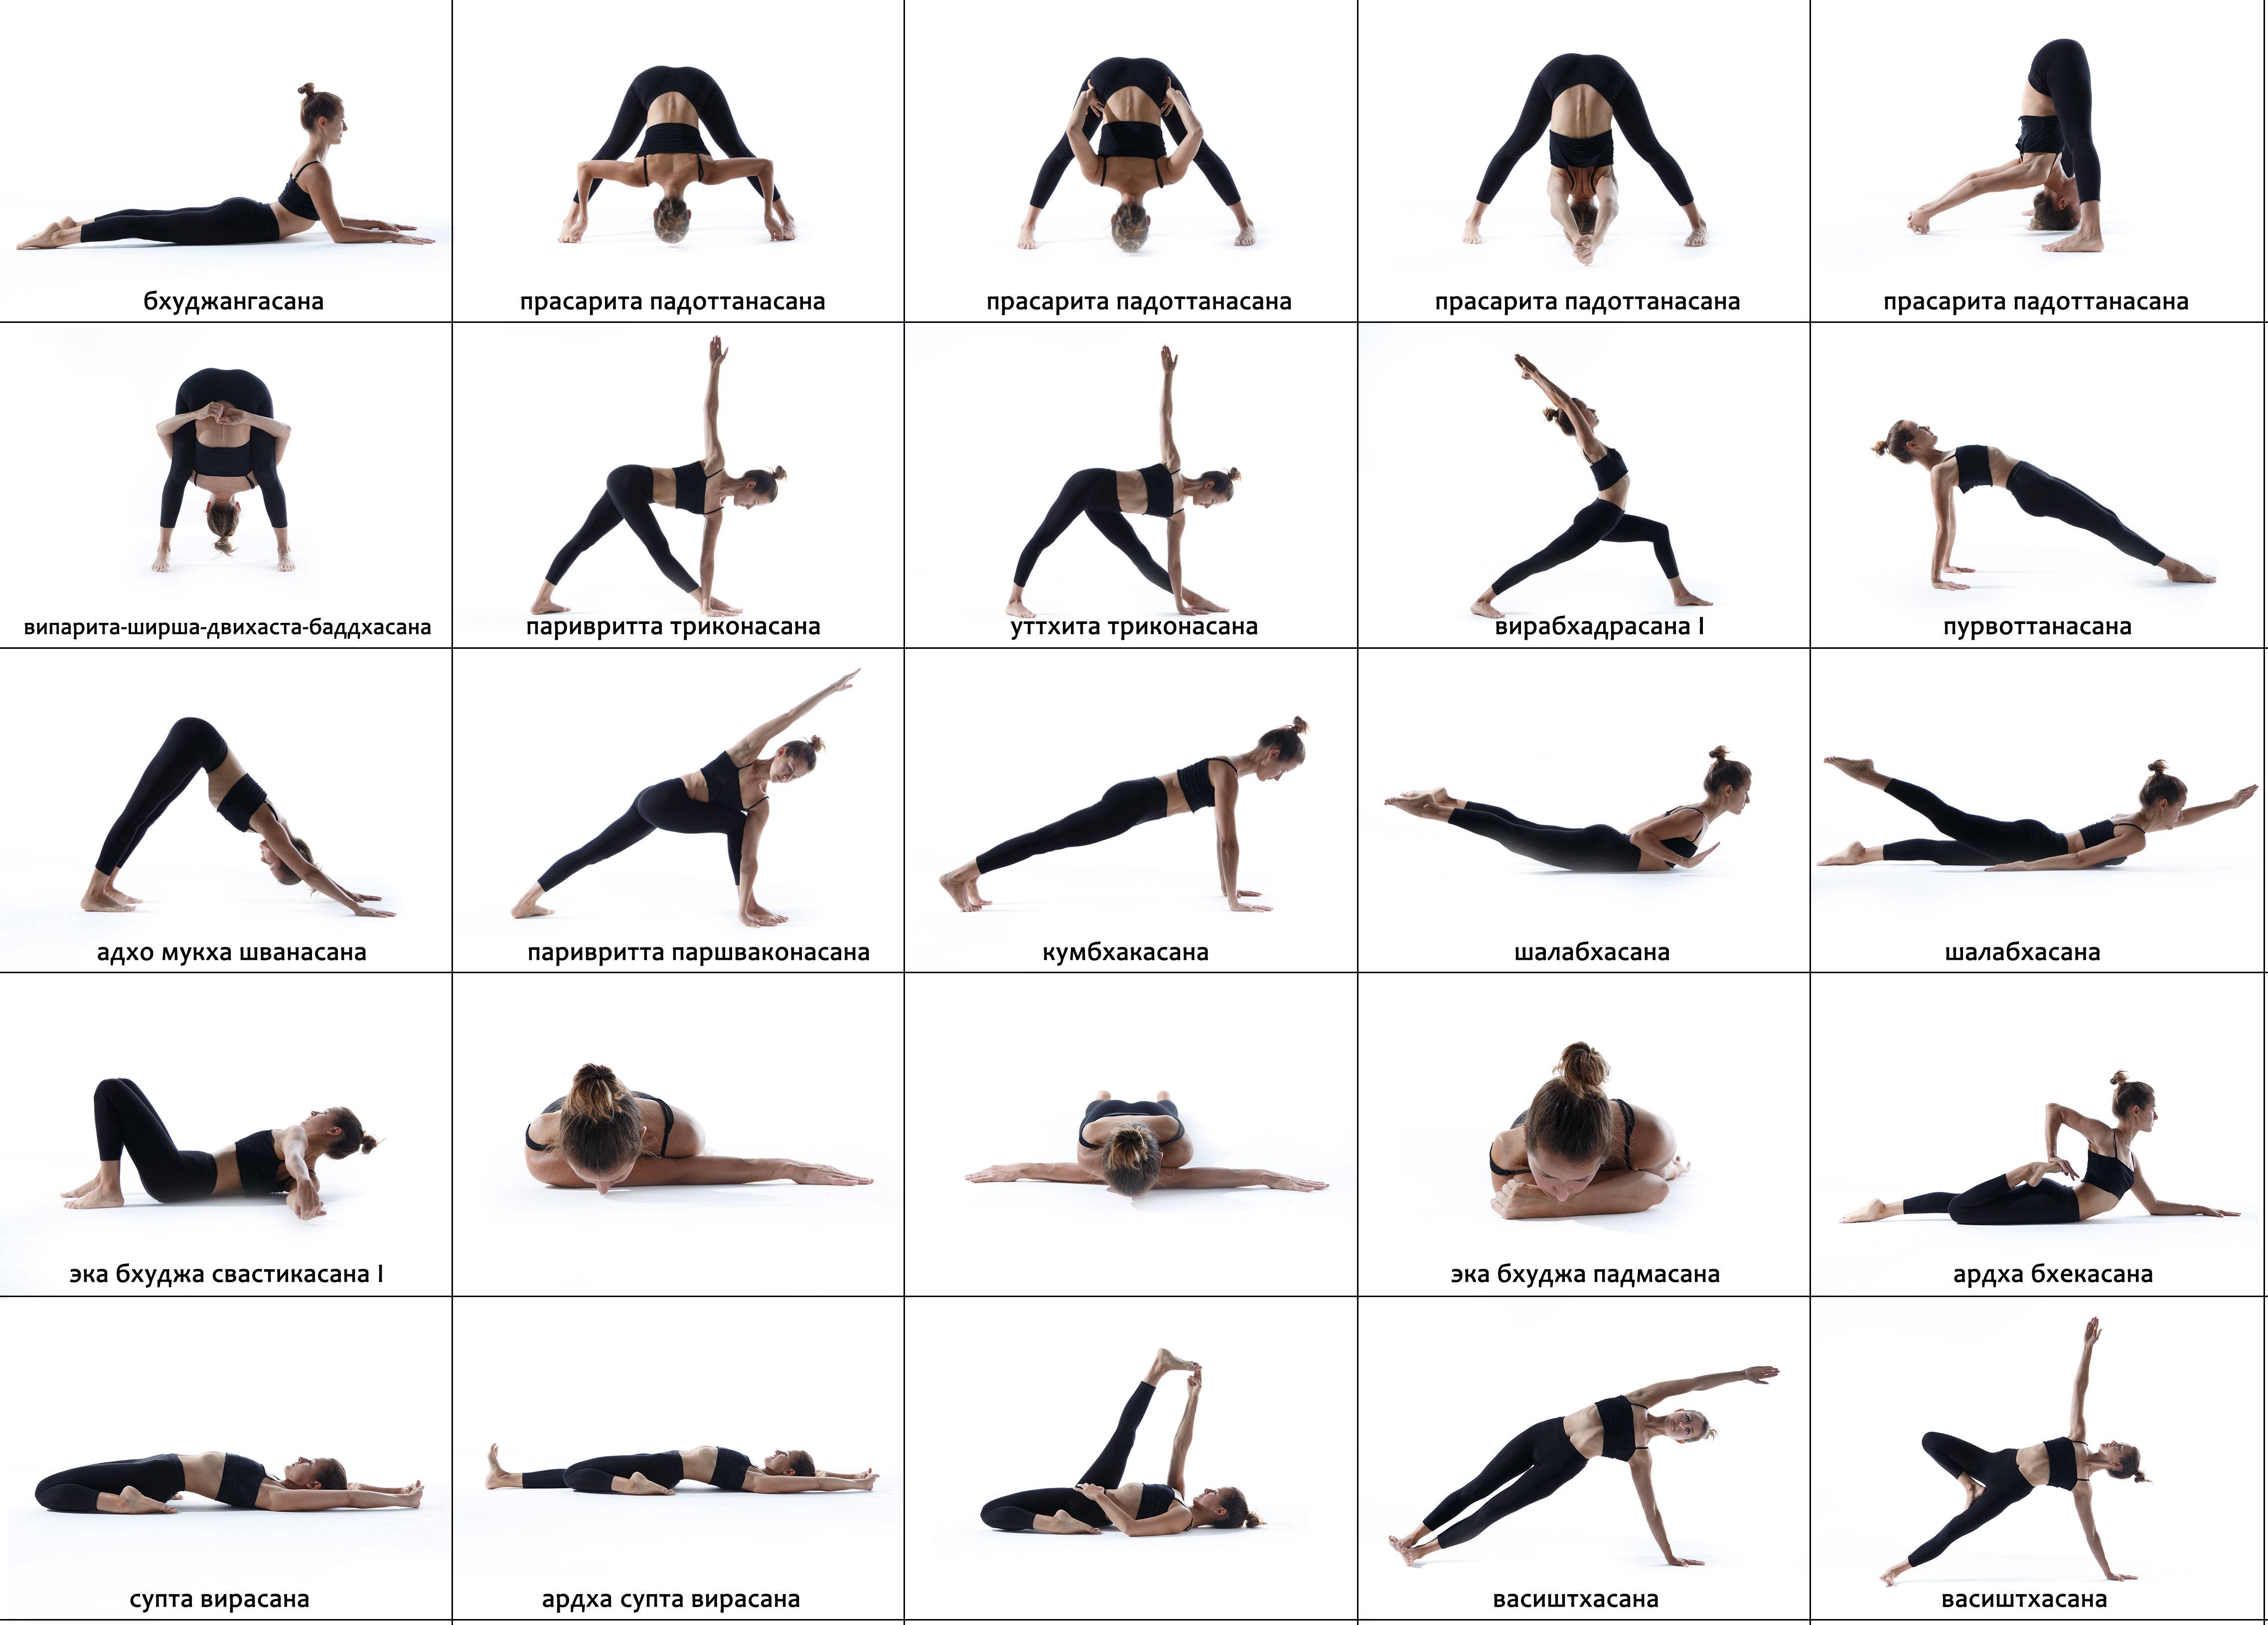 7 упражнений для шеи, чтобы ликвидировать морщины, провисания и второй подбородок